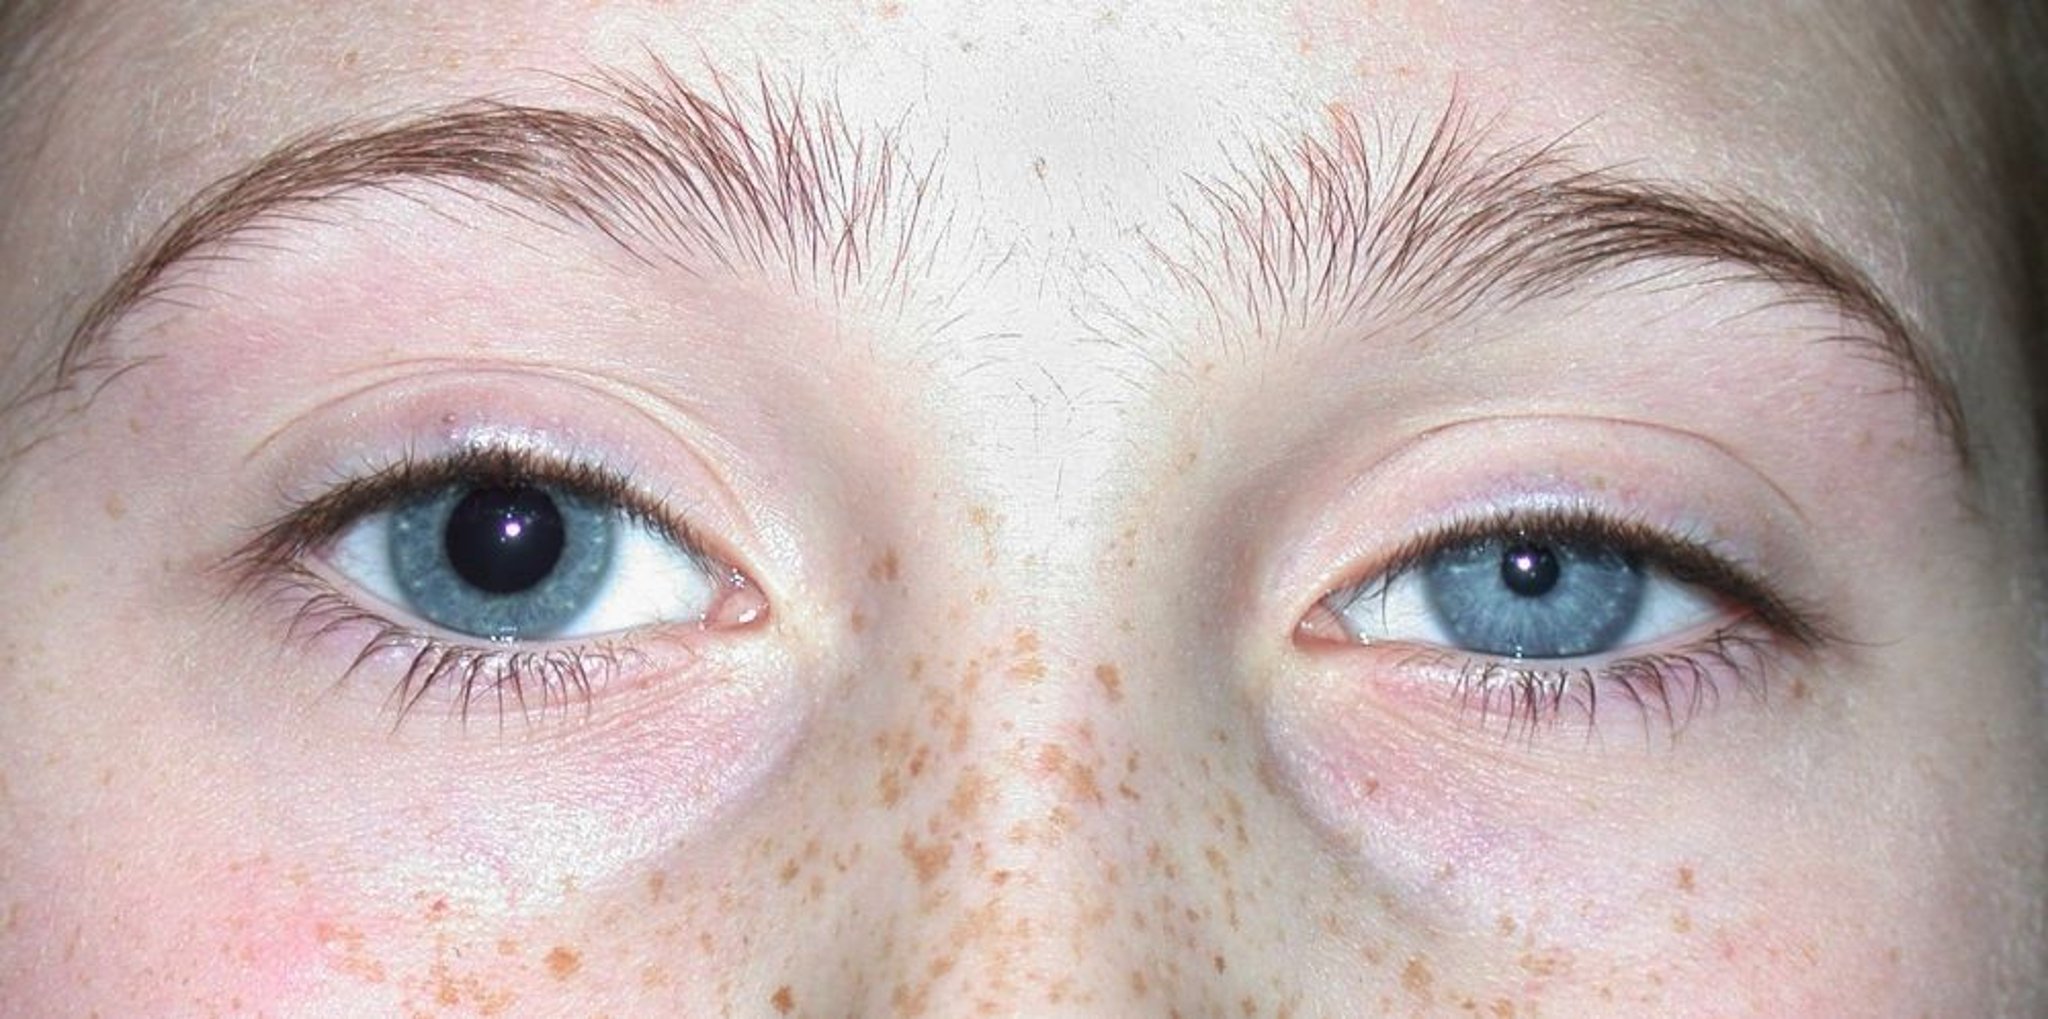 Pupilles de taille différente (Anisocorie)